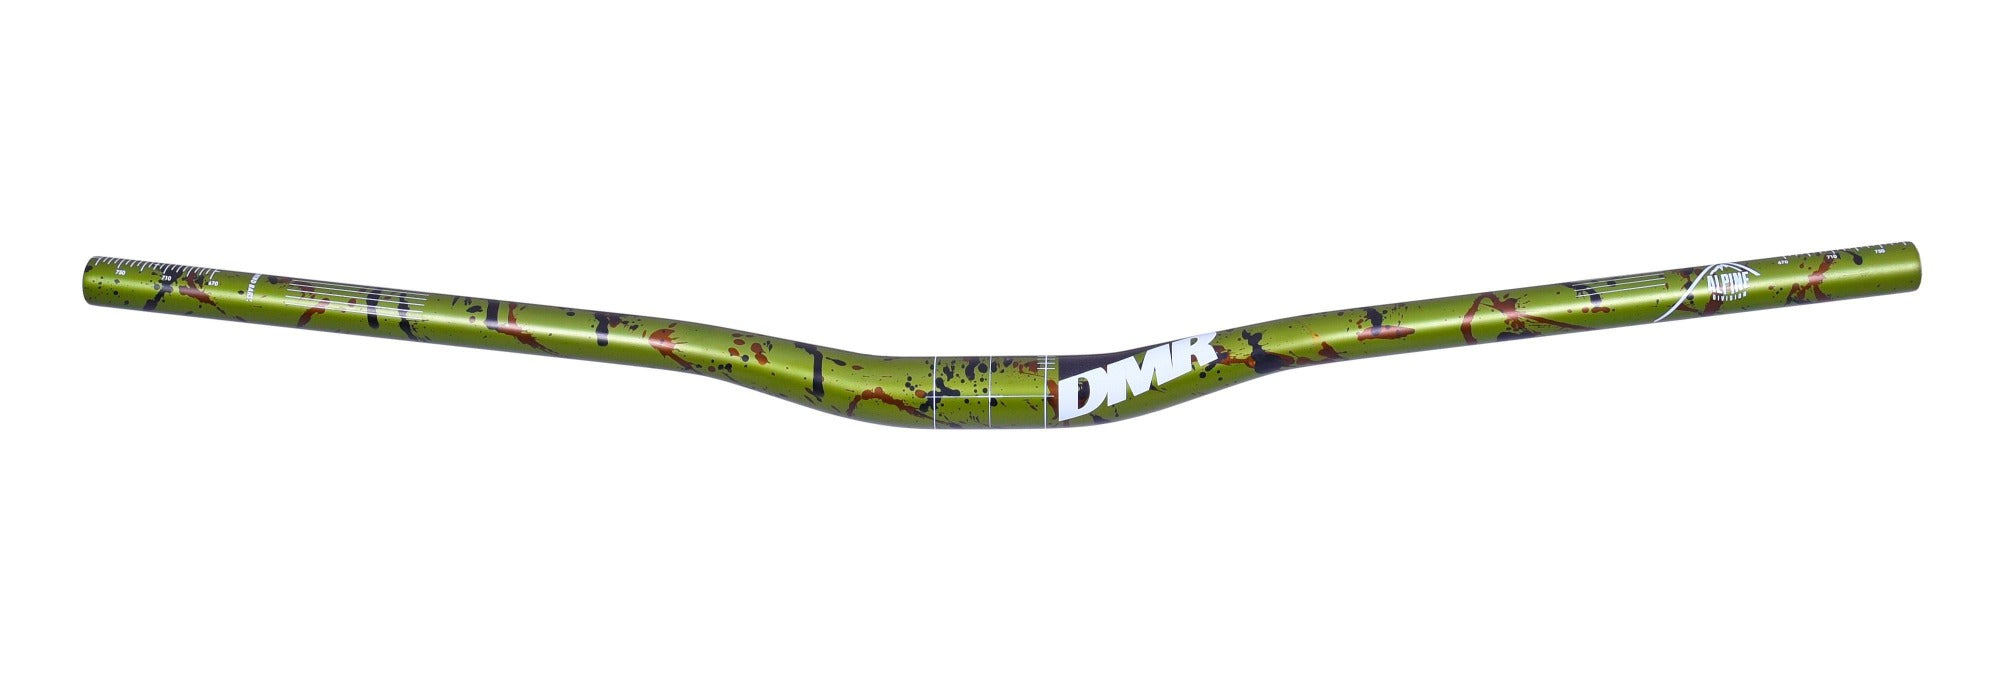 Manillar DMR Wingbar MK4 Edición Especial Liquid Green Camo